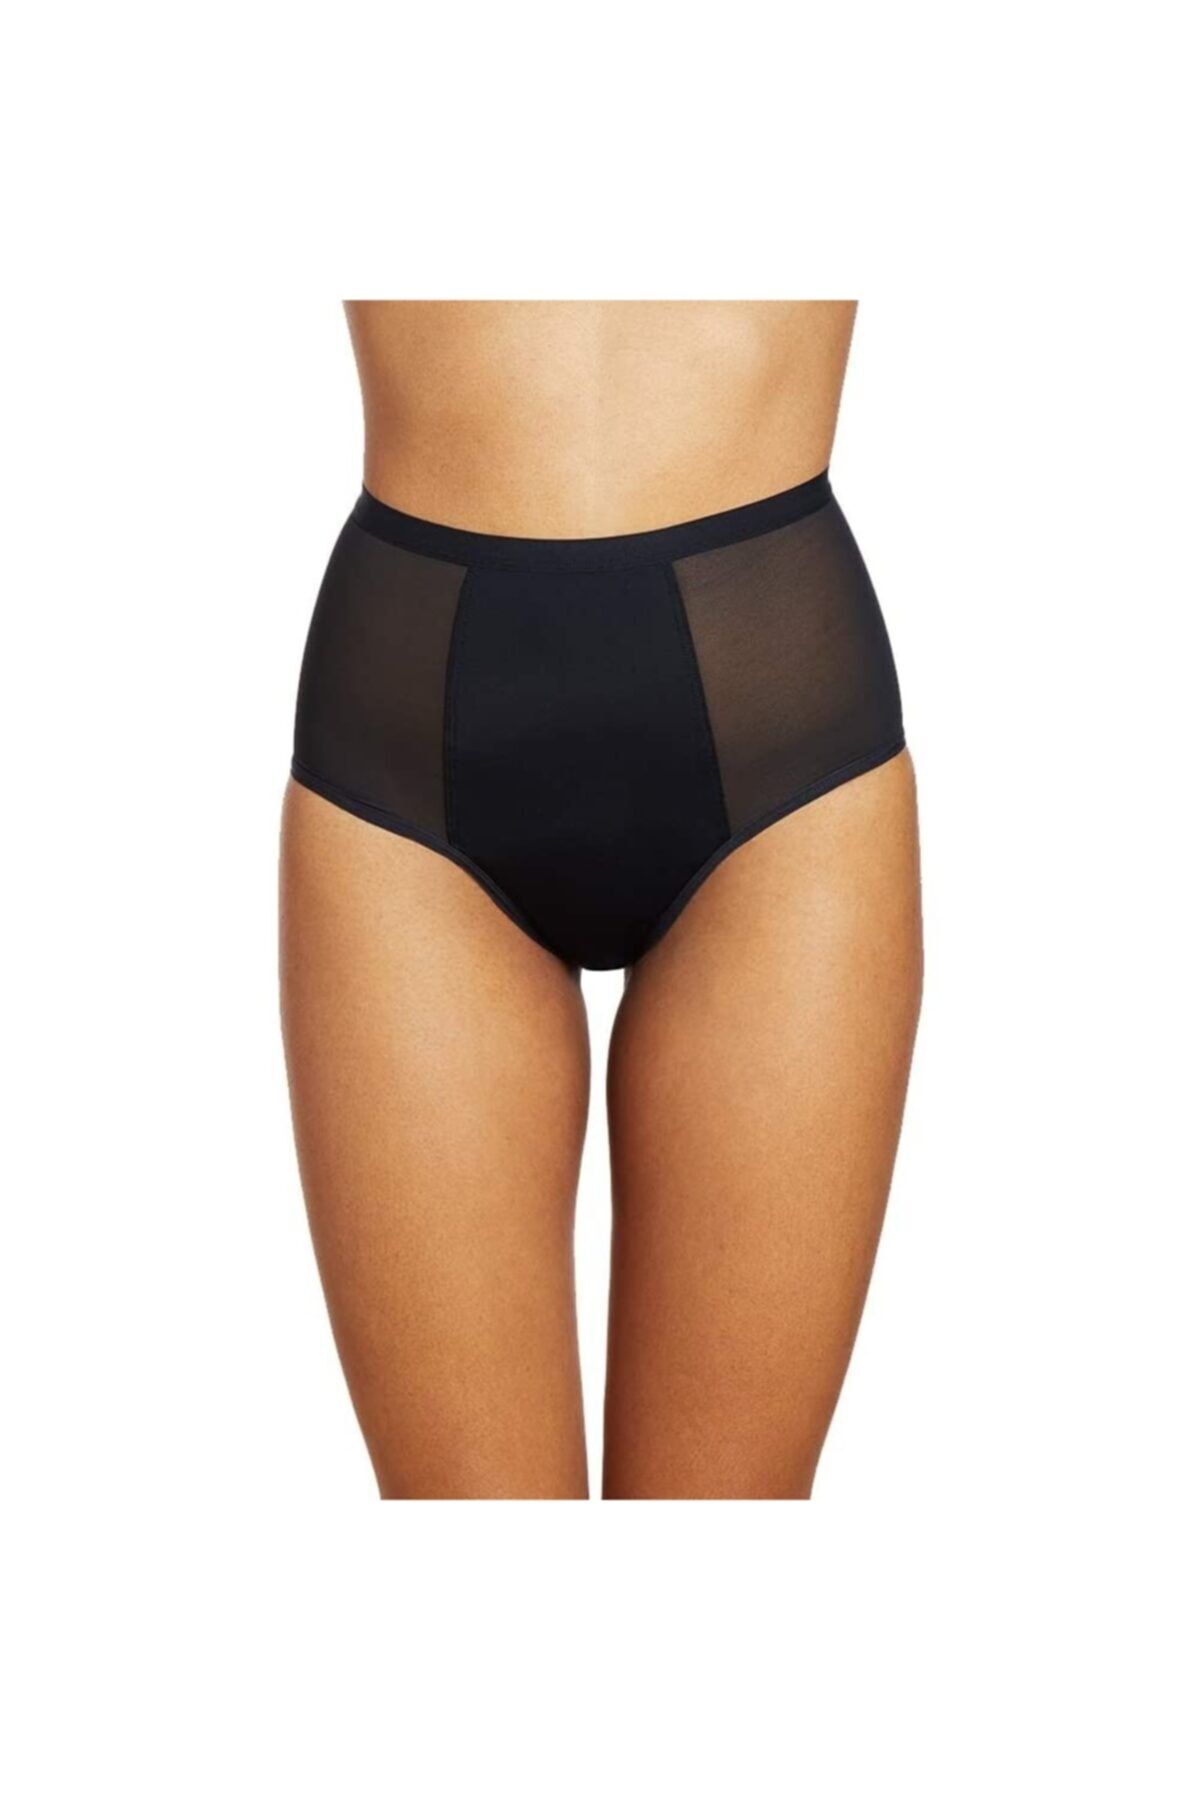 Fhinix Underwear Adet Regl Dönem Külotları Yüksek Bel 3'lü Paket